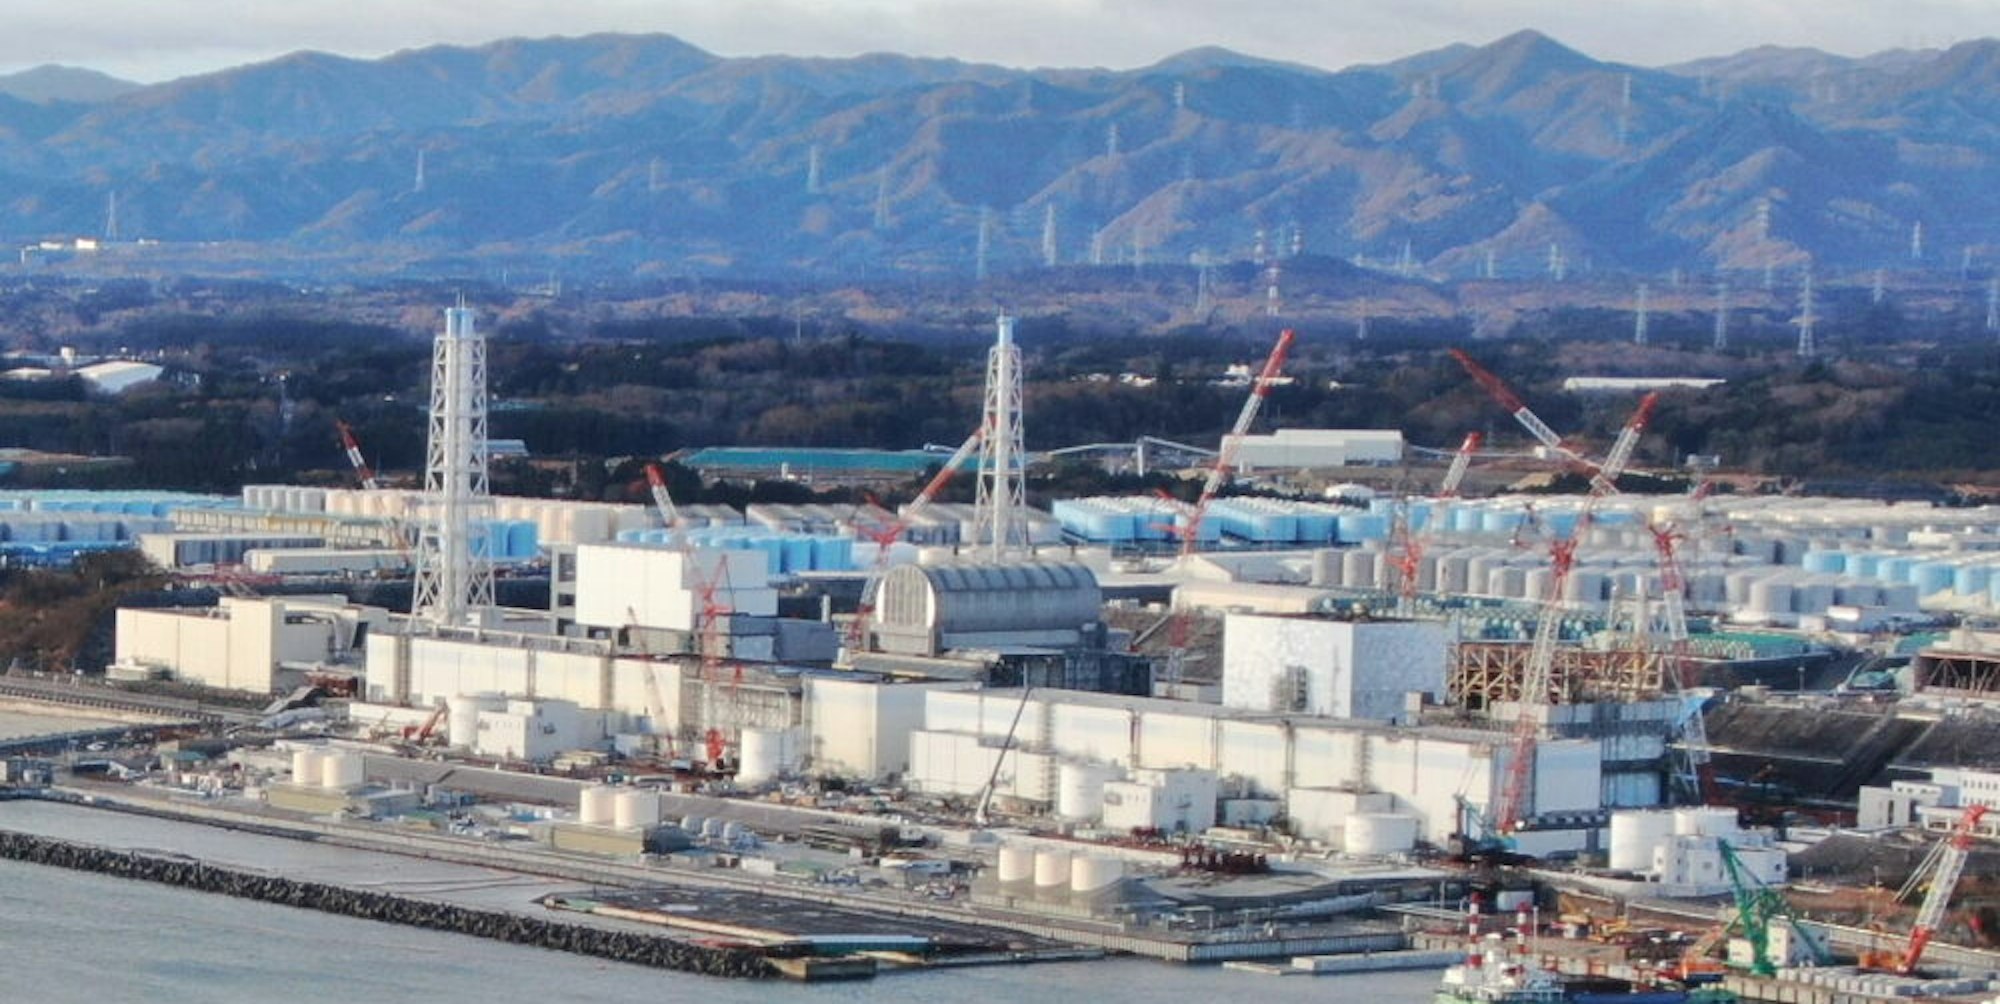 Das Kraftwerksgelände in Fukushima ist eine Riesenbaustelle, gut 1000 Tanks mit belastetem Wasser stehen auf dem Areal.